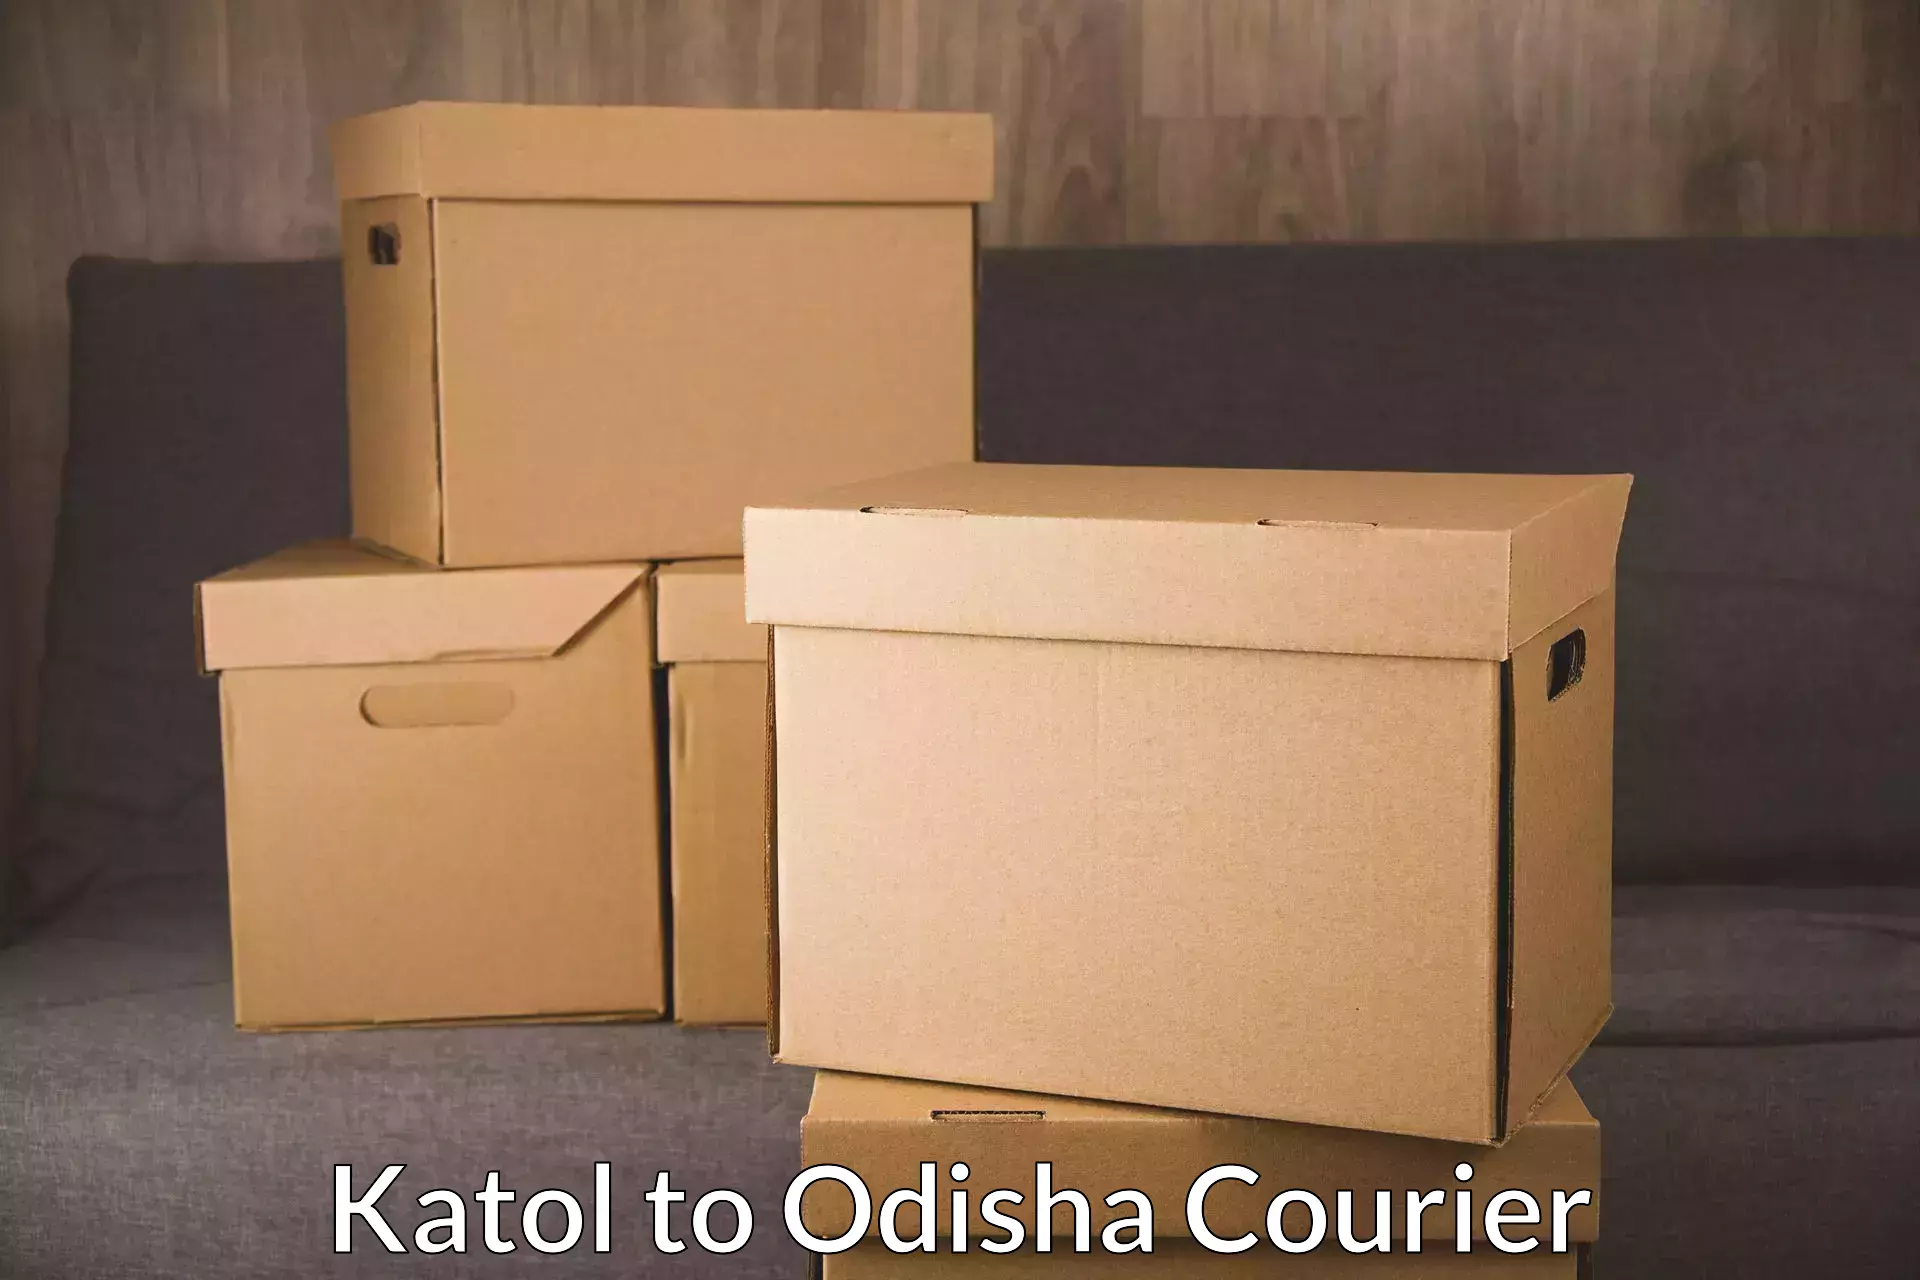 Next-day freight services Katol to Mathili